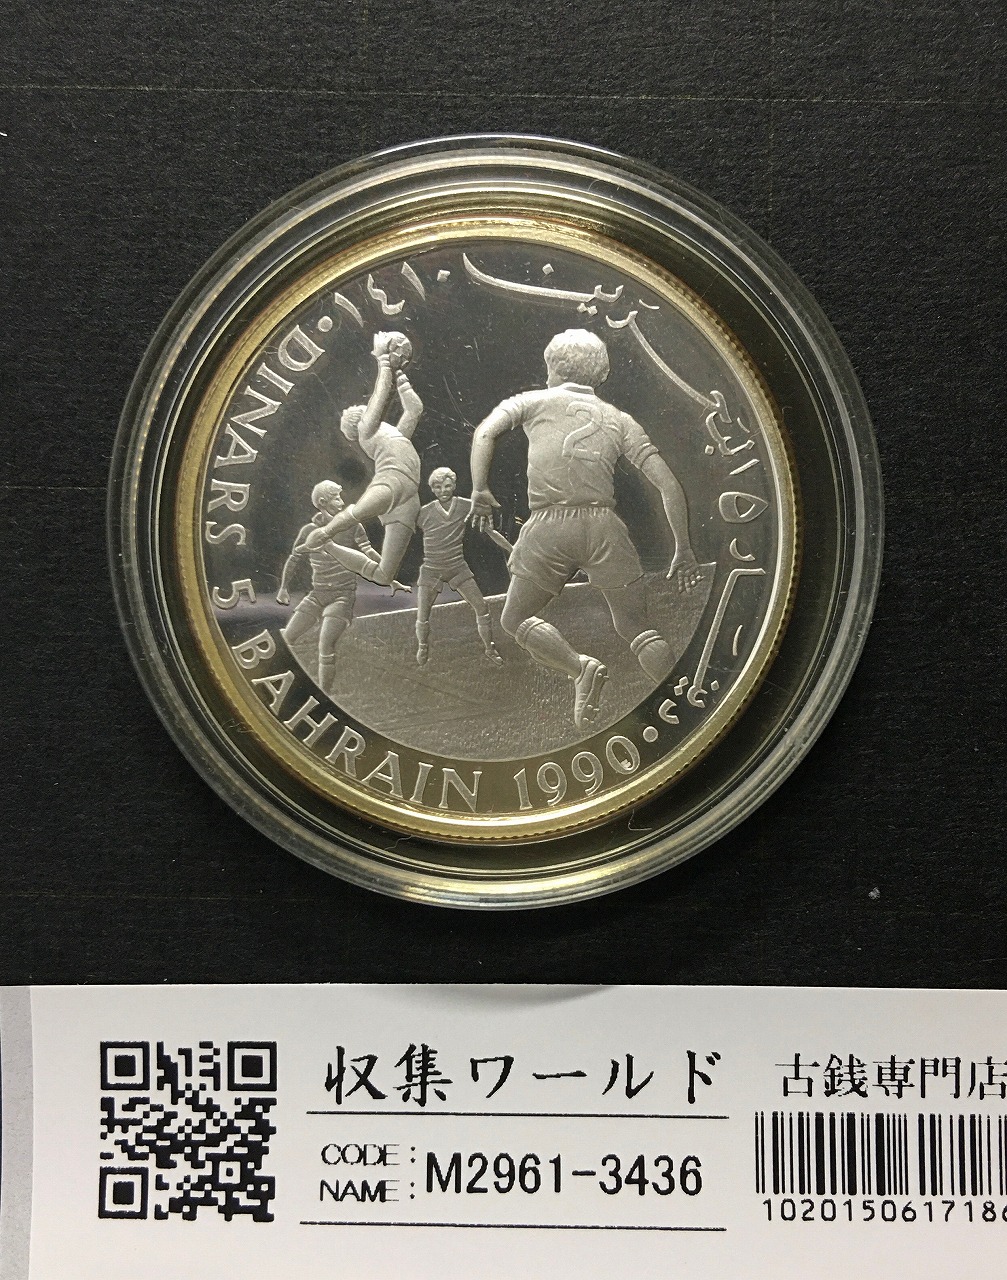 セーブ・ザ・チルドレン基金70周年記念銀貨 5D/バーレーン銀貨 1990年 未使用